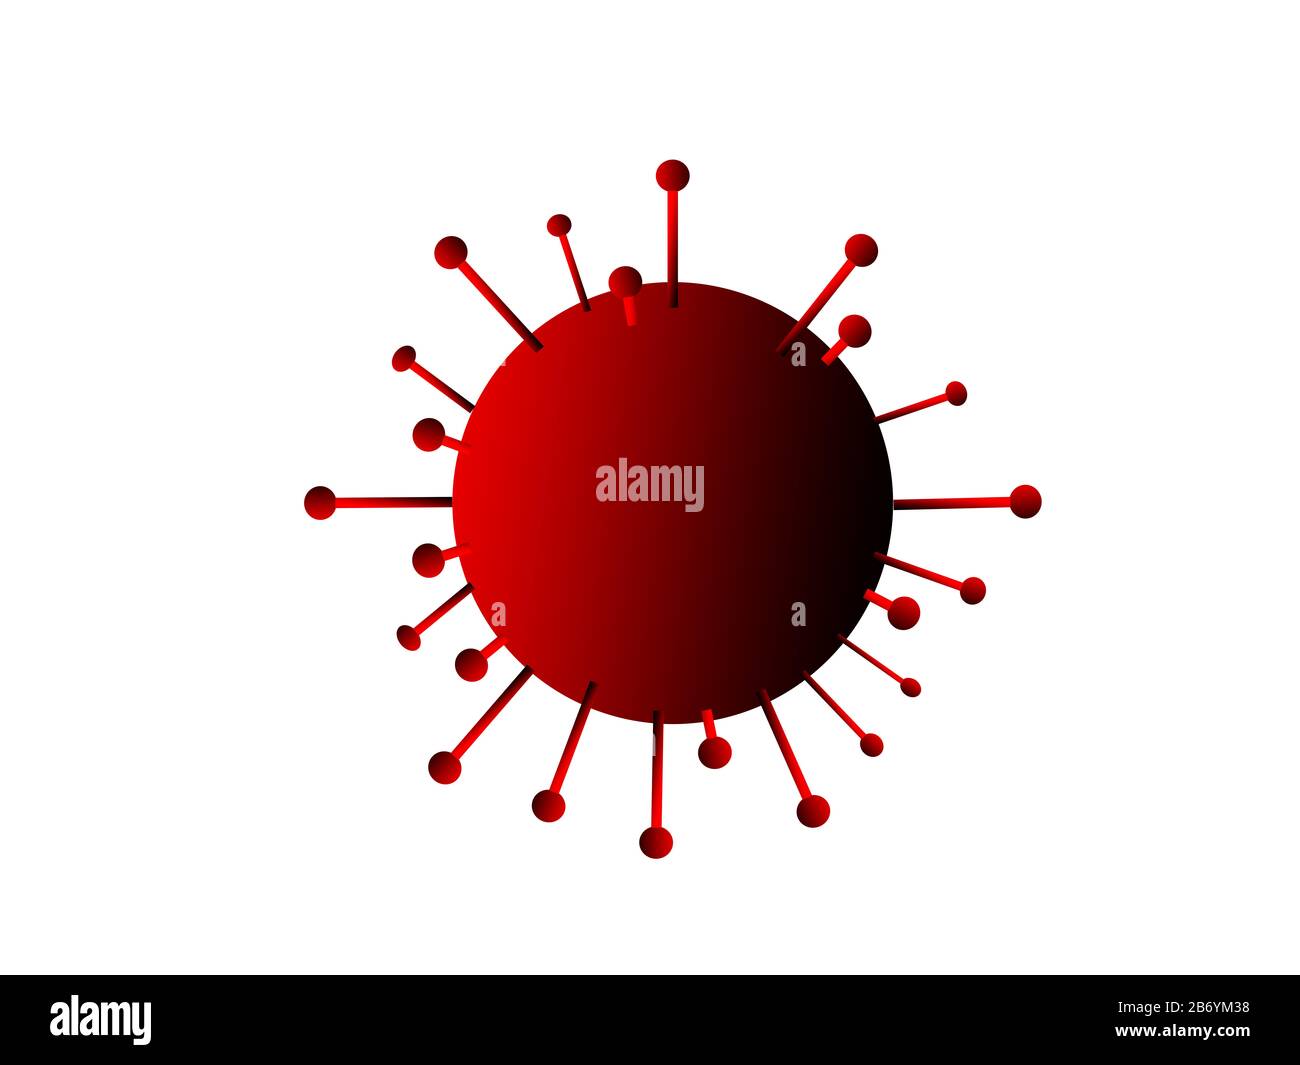 Illustration of an isolated coronavirus Stock Photo